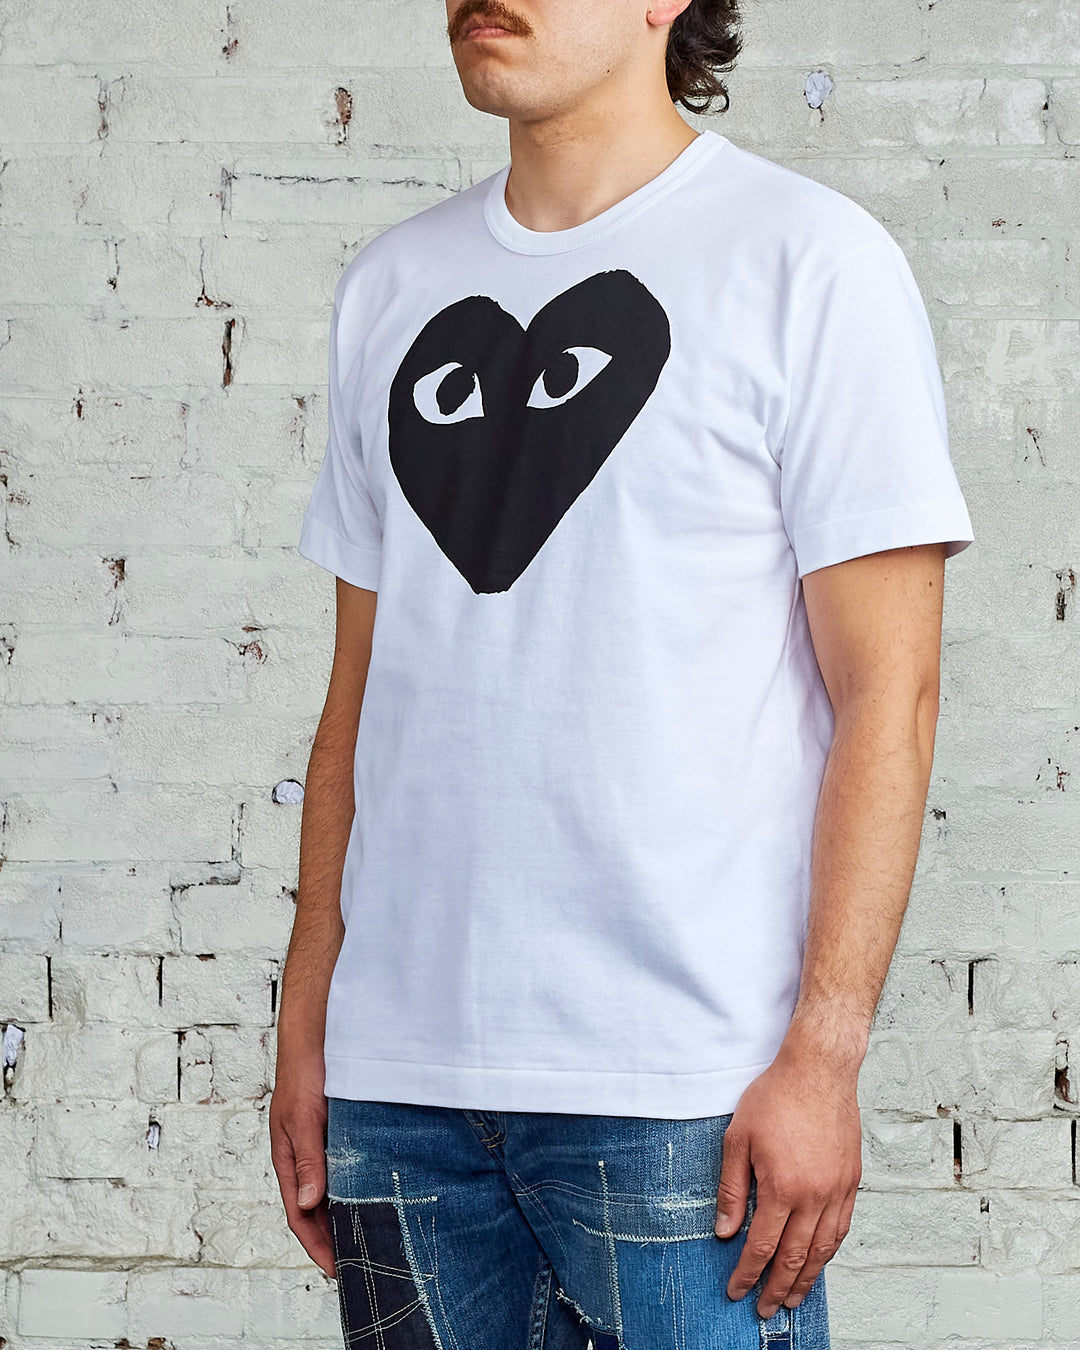 Comme des Garçons PLAY Large Chest Black Heart T-Shirt White / Black